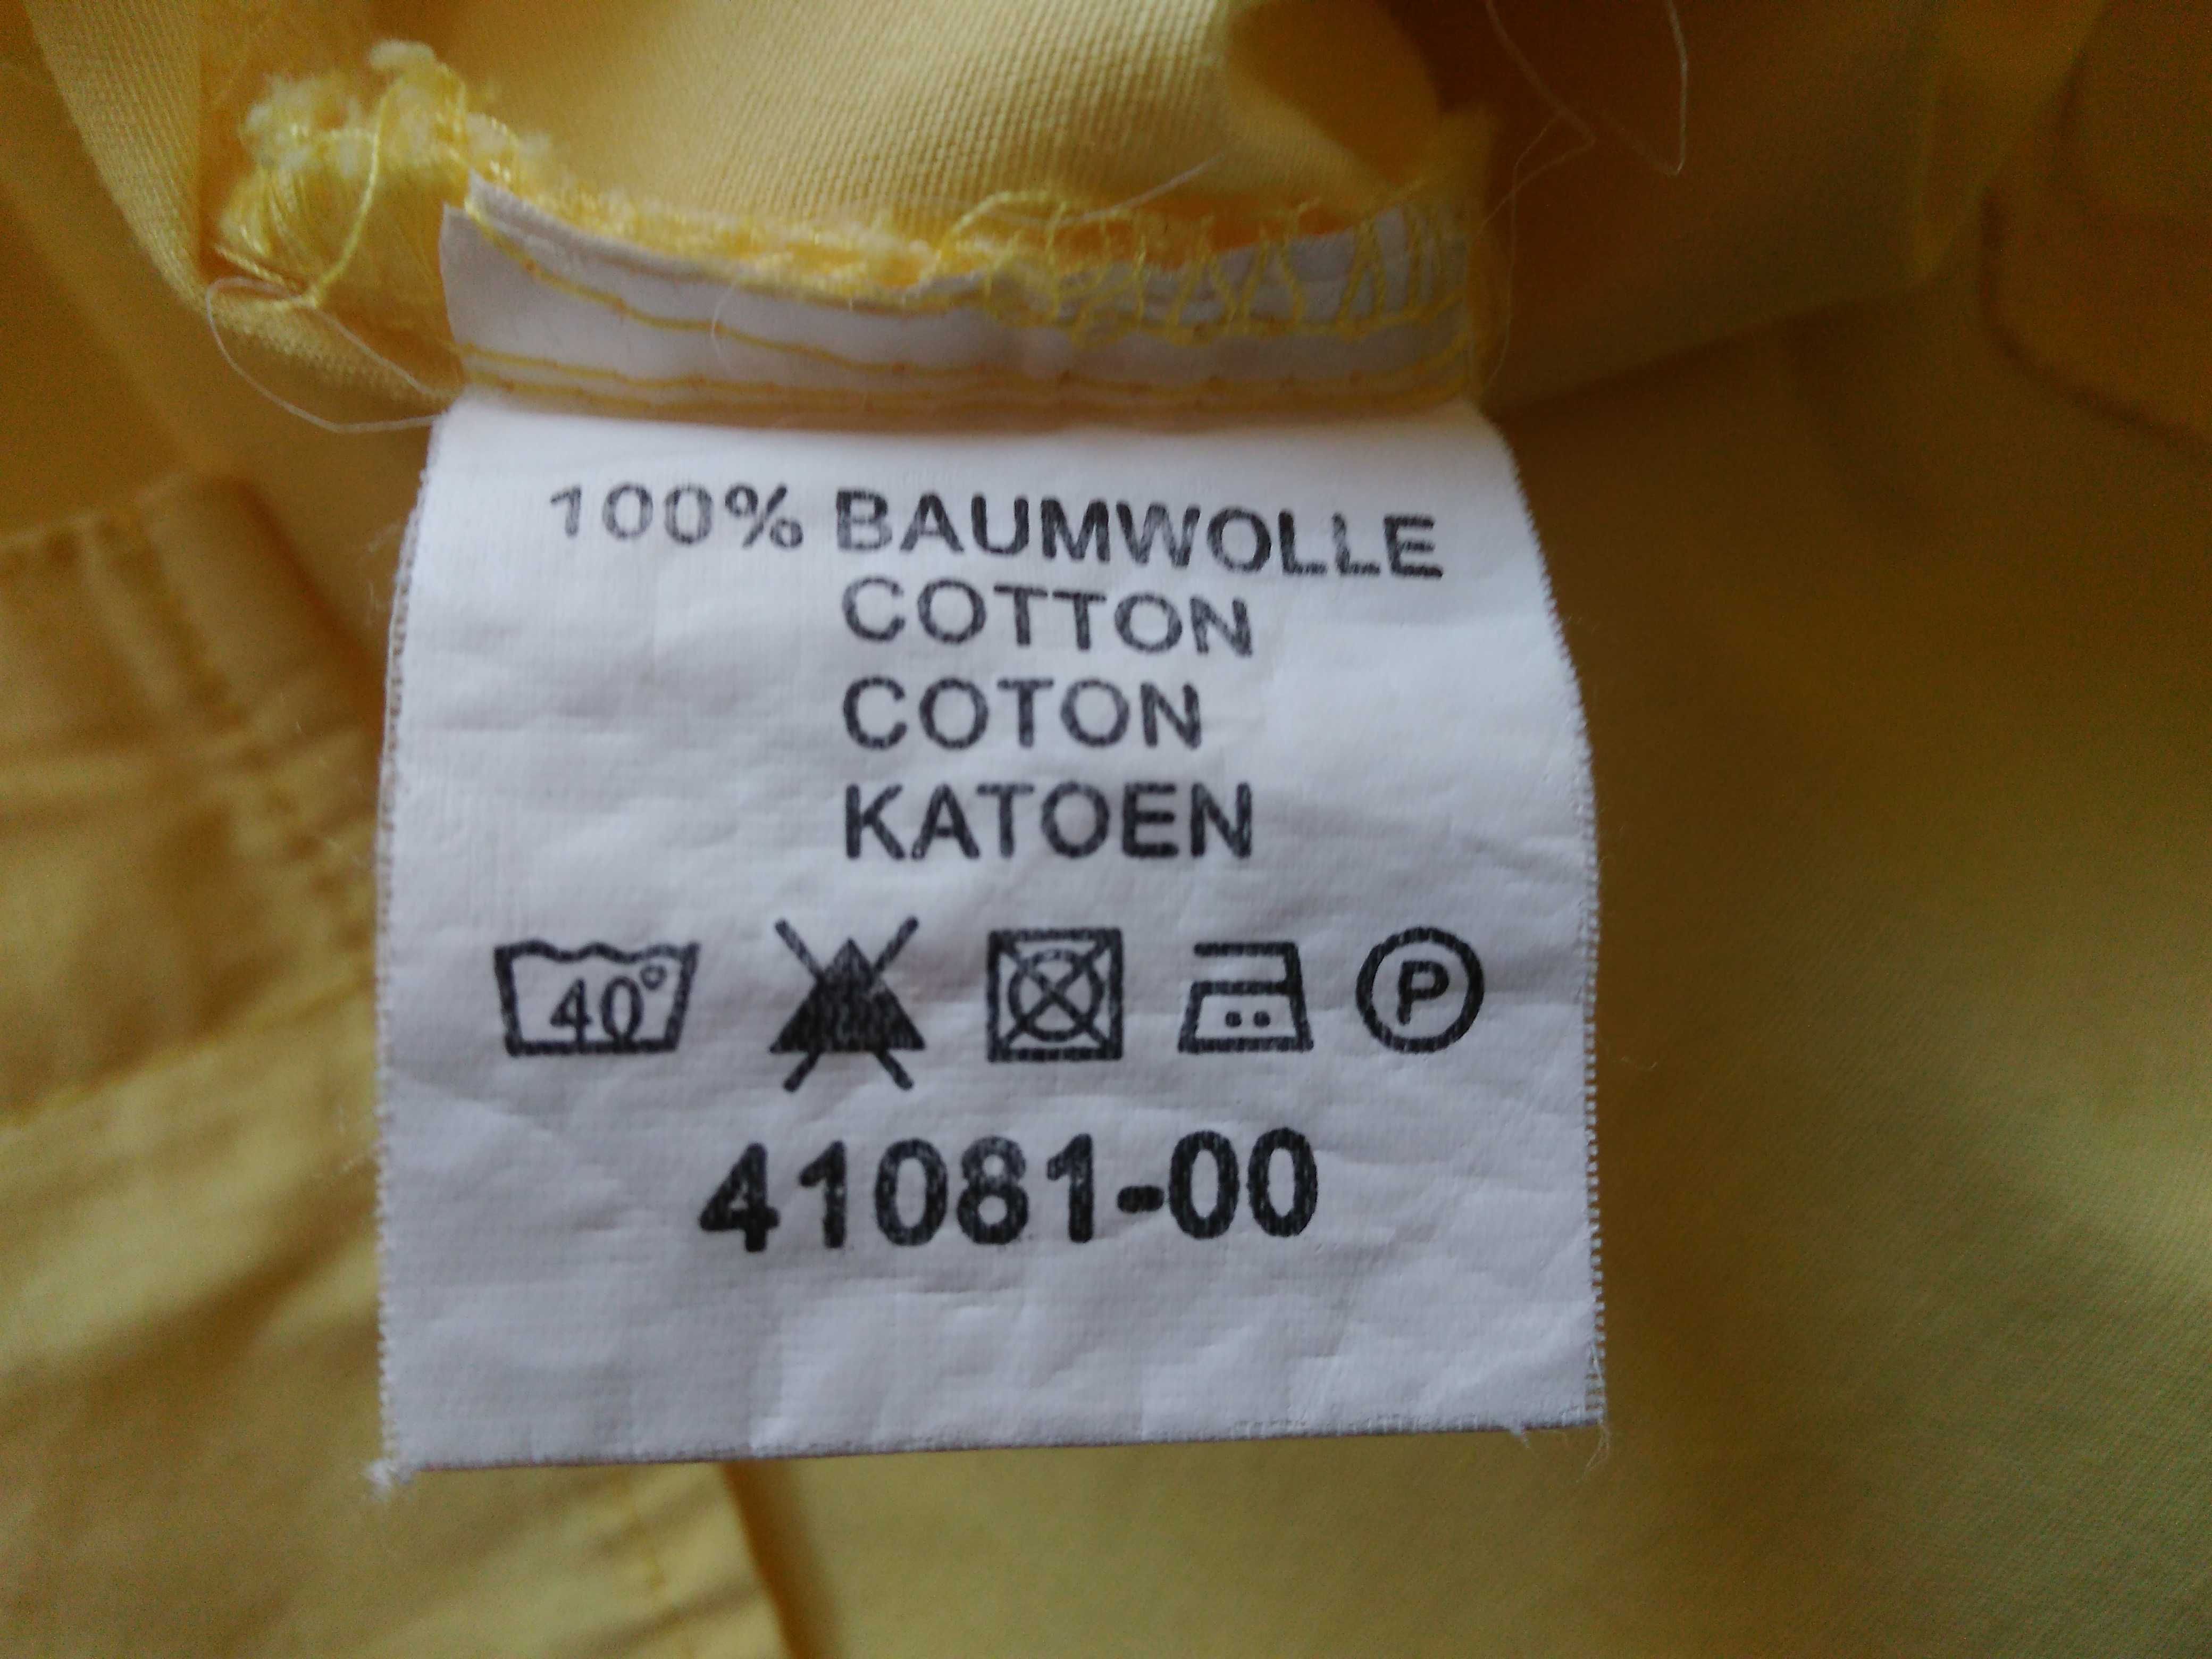 koszulowa bluzka żółta 100% bawełna - 64,5 cm x2 w biuście